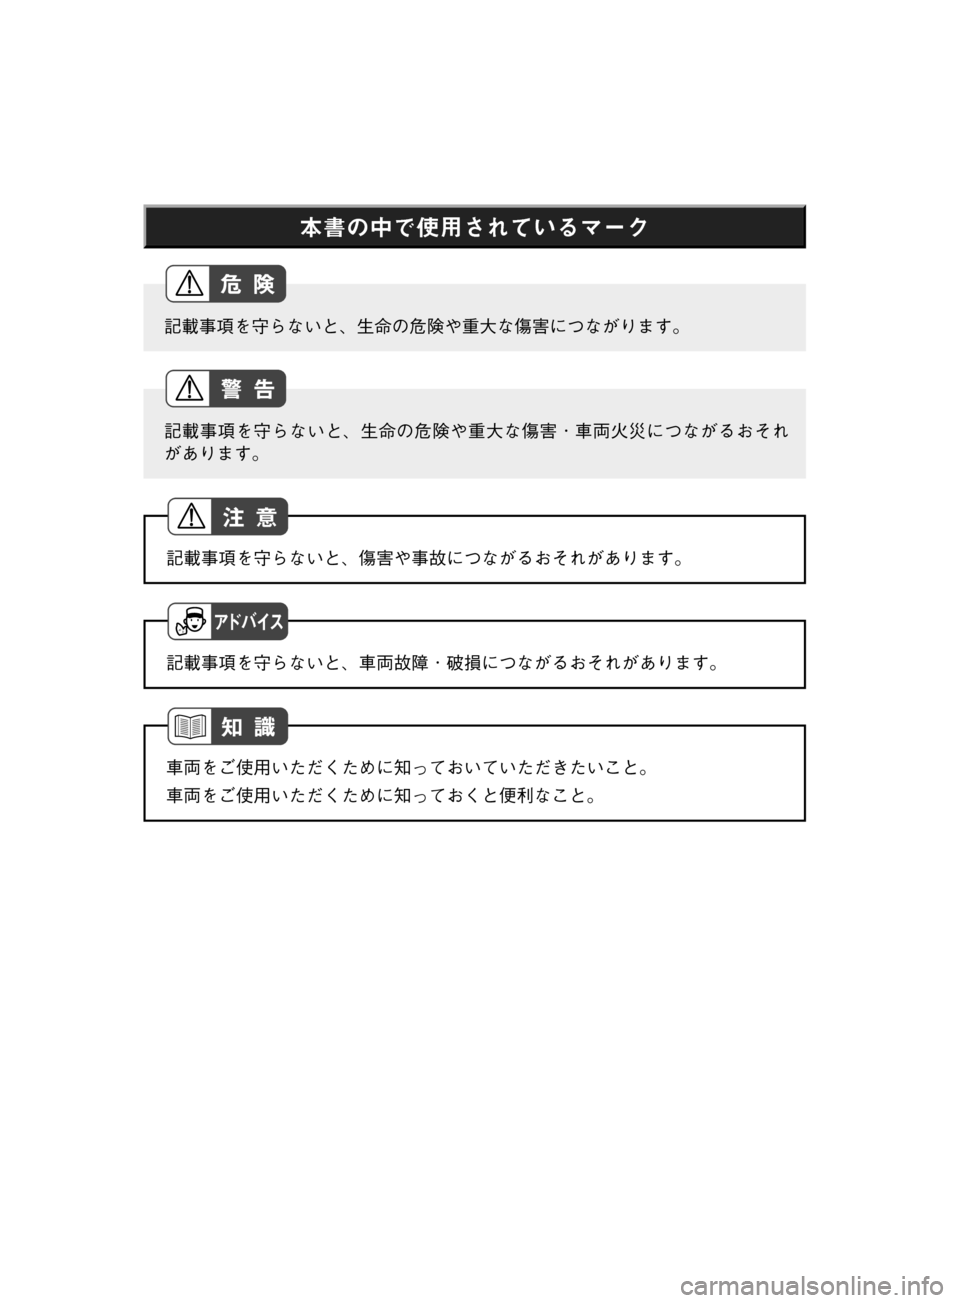 MAZDA MODEL TITAN 2013  タイタン｜取扱説明書 (in Japanese) Š	{w¤p–;^•oM”Ú”«
GLÄò›	’sMqz
\Ëw)e
GL